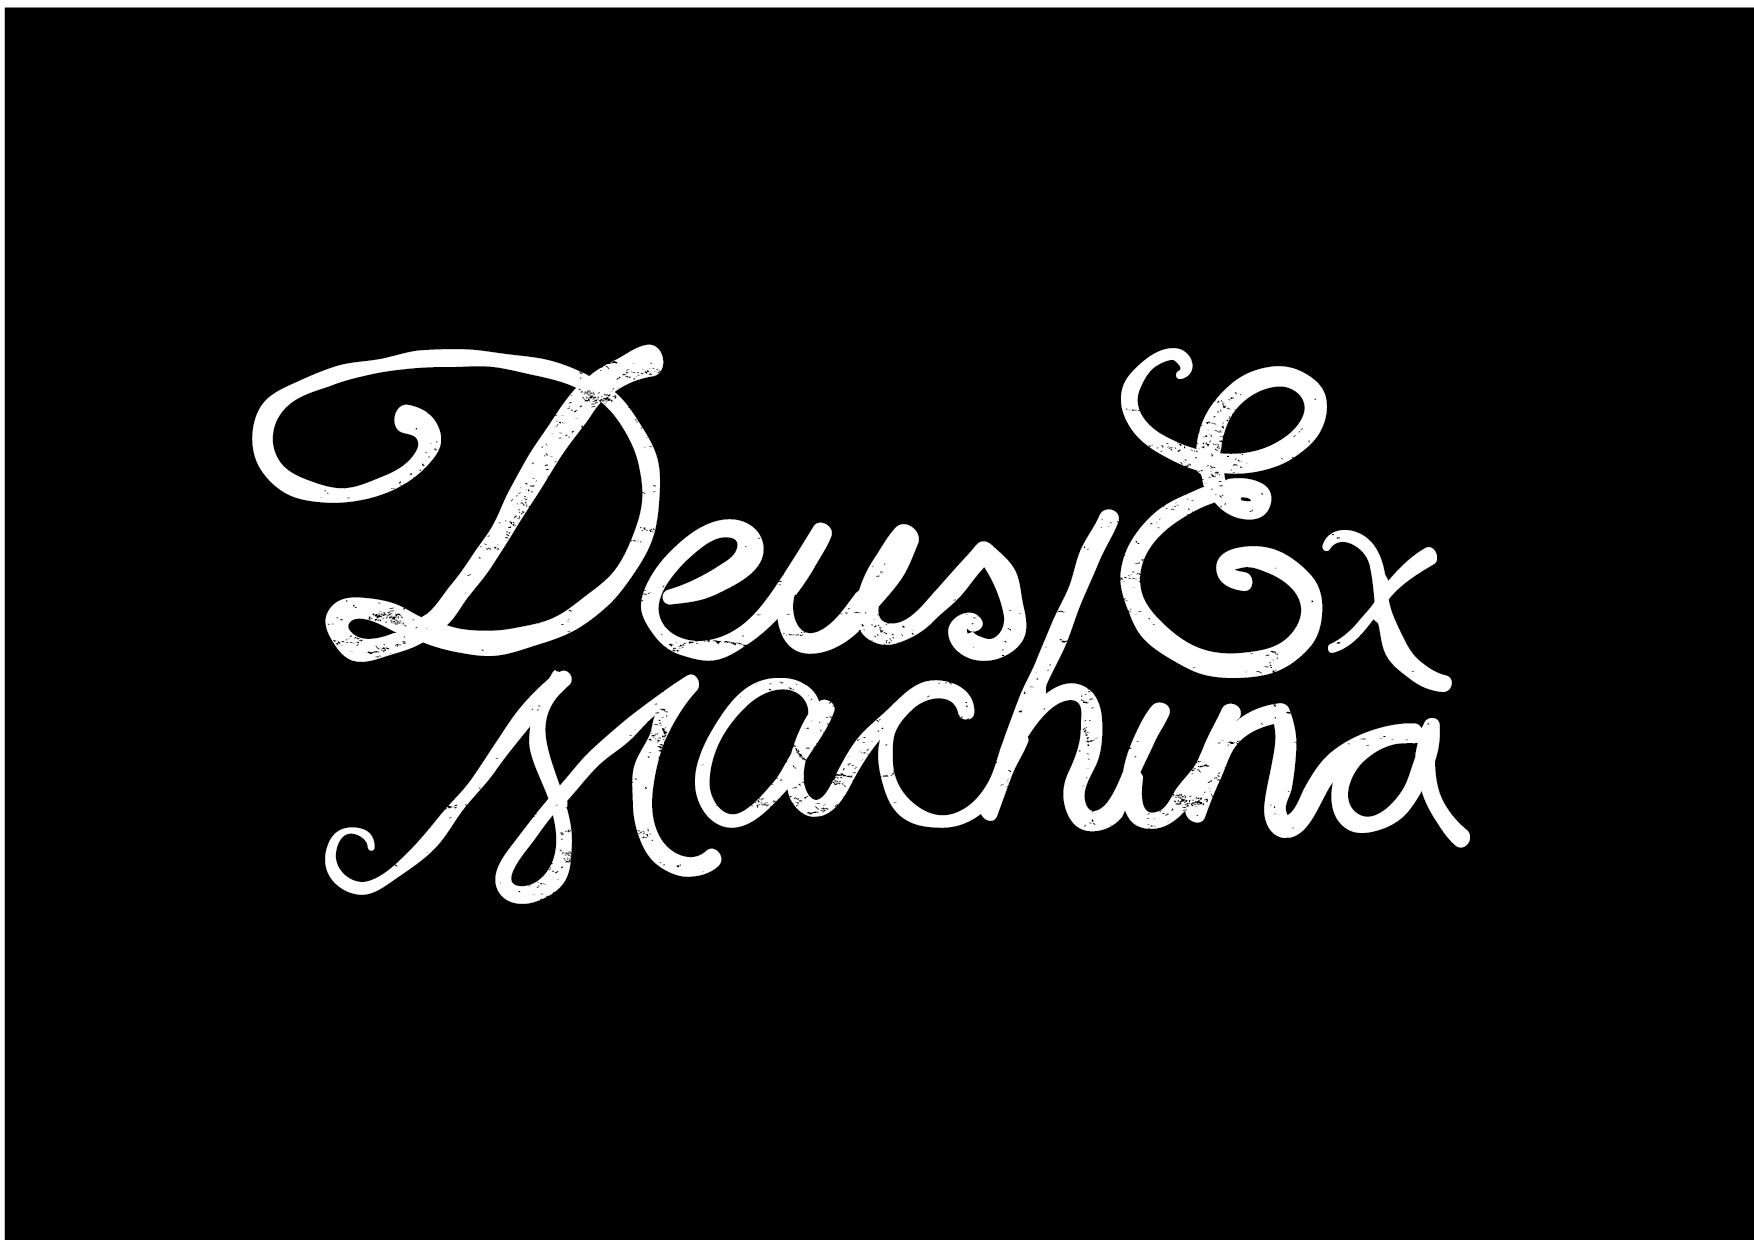 Future State: How Deus Ex Machina designs for lifestyle